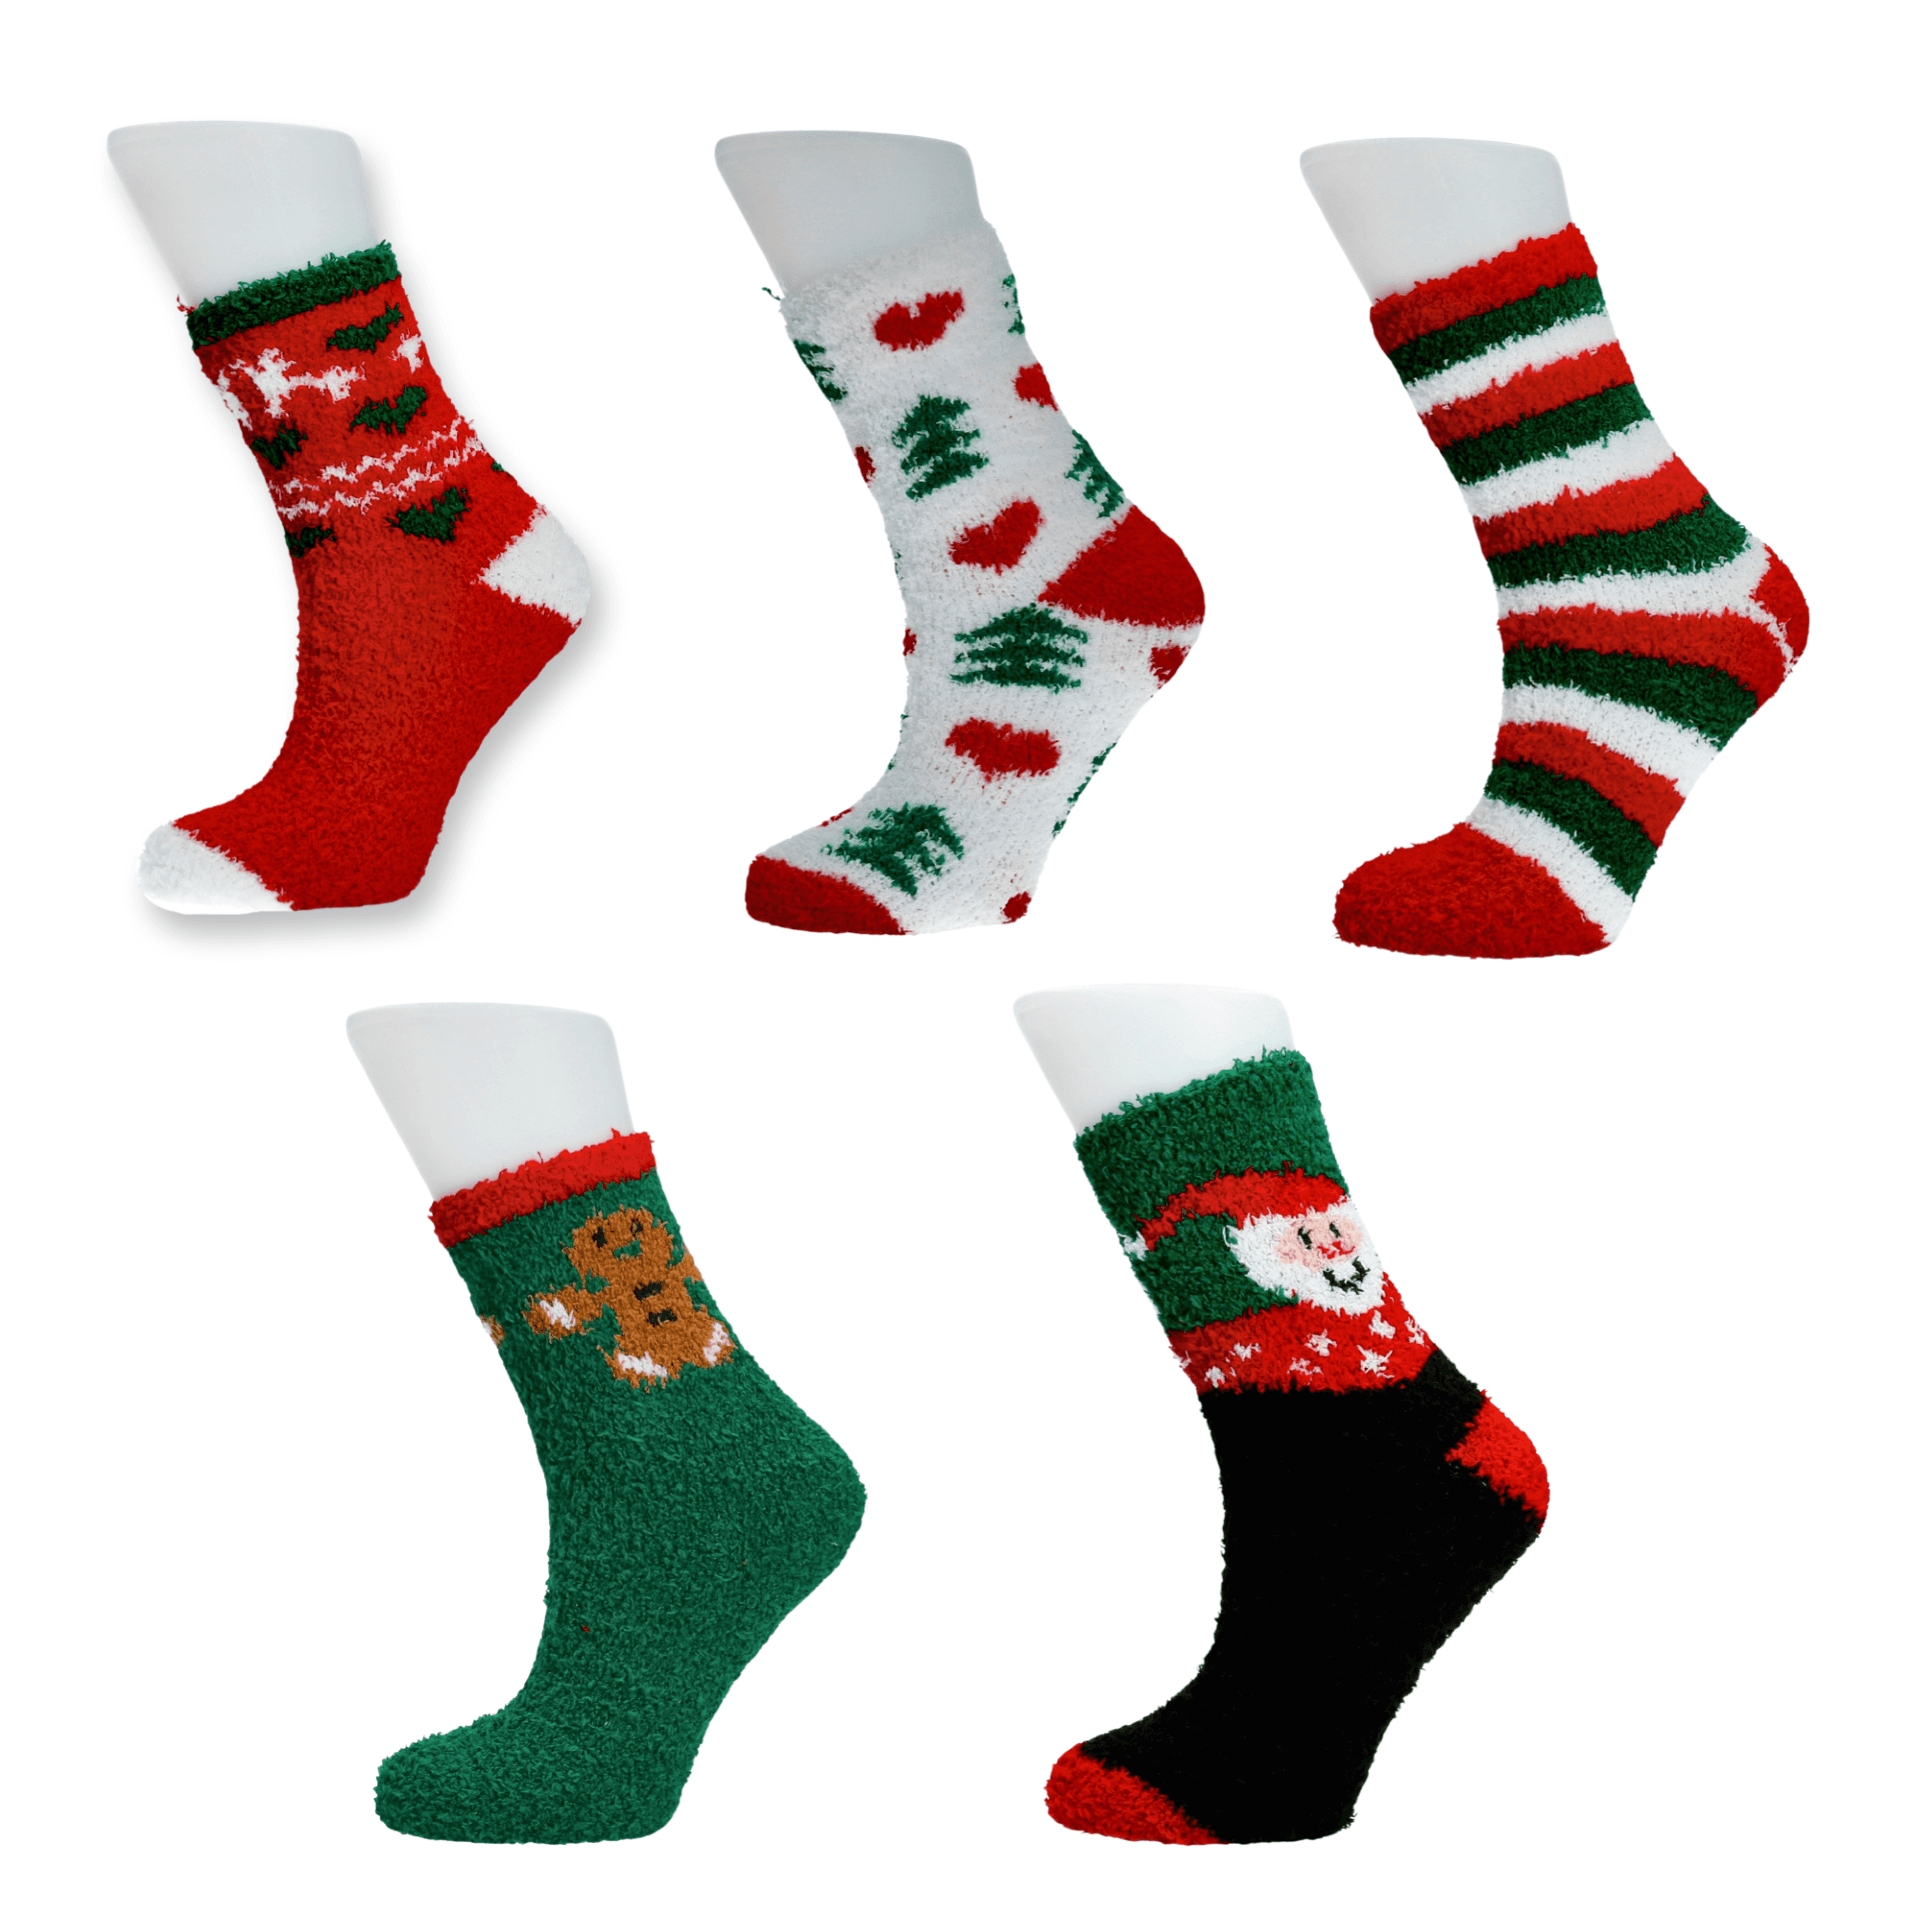 Lote de 5 pares de calcetines de Navidad